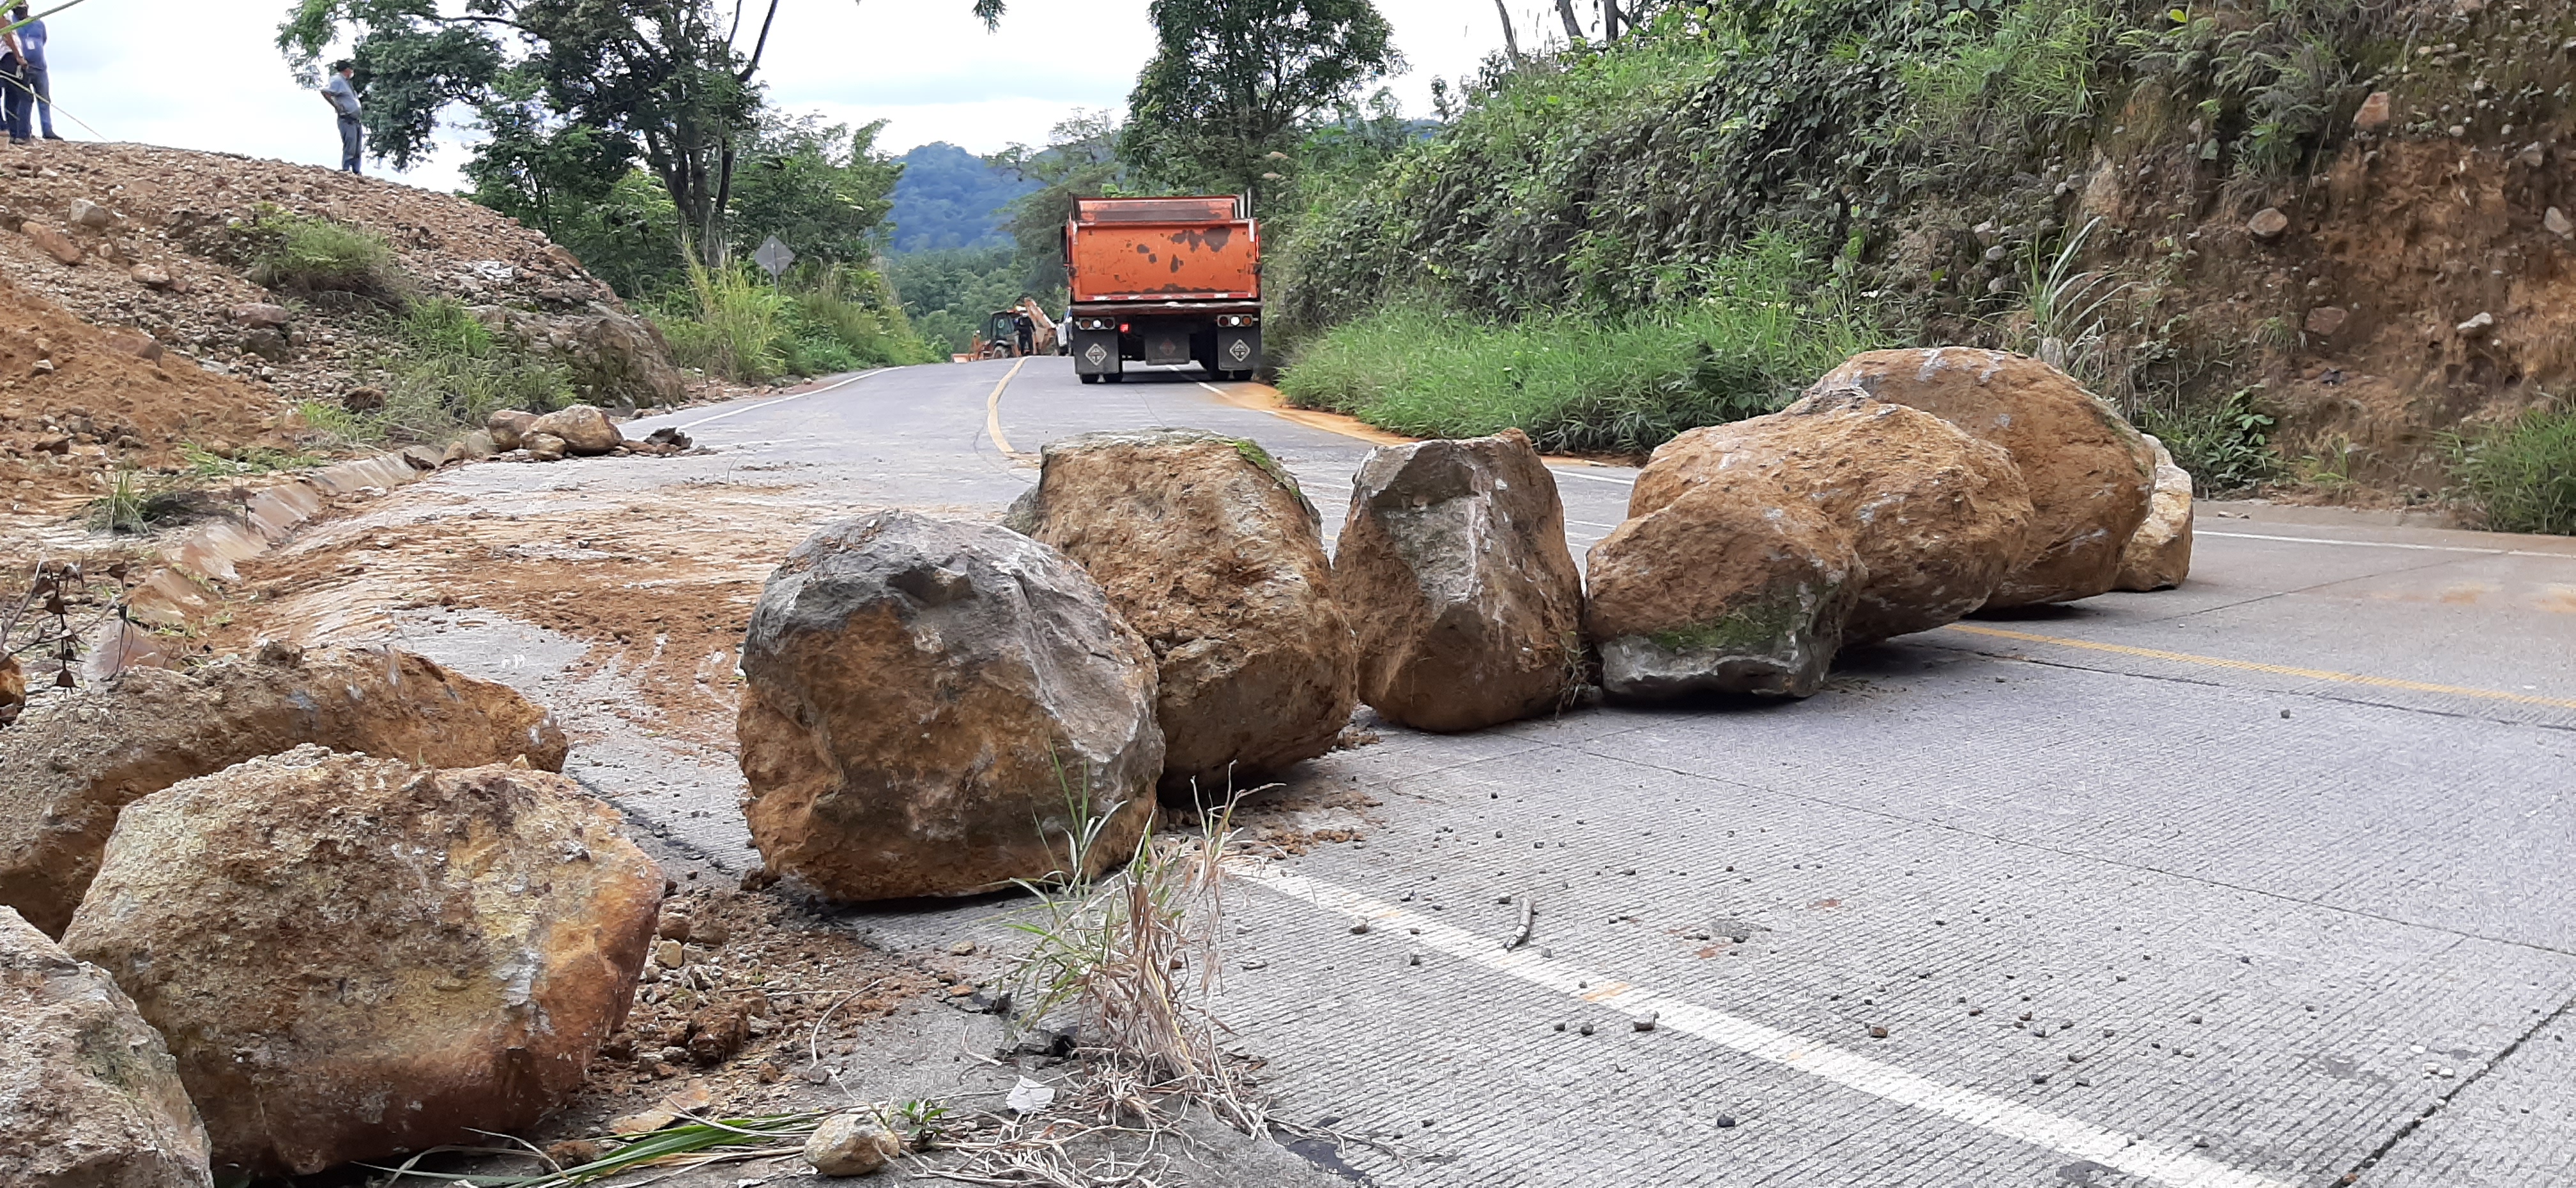 Piedras y tierra fue utilizada por la maquinaria de la comuna de Chicacao, para bloquear la ruta que conecta con Santiago Atitlán,Sololá. (Foto Prensa libre: Marvin Túnchez)